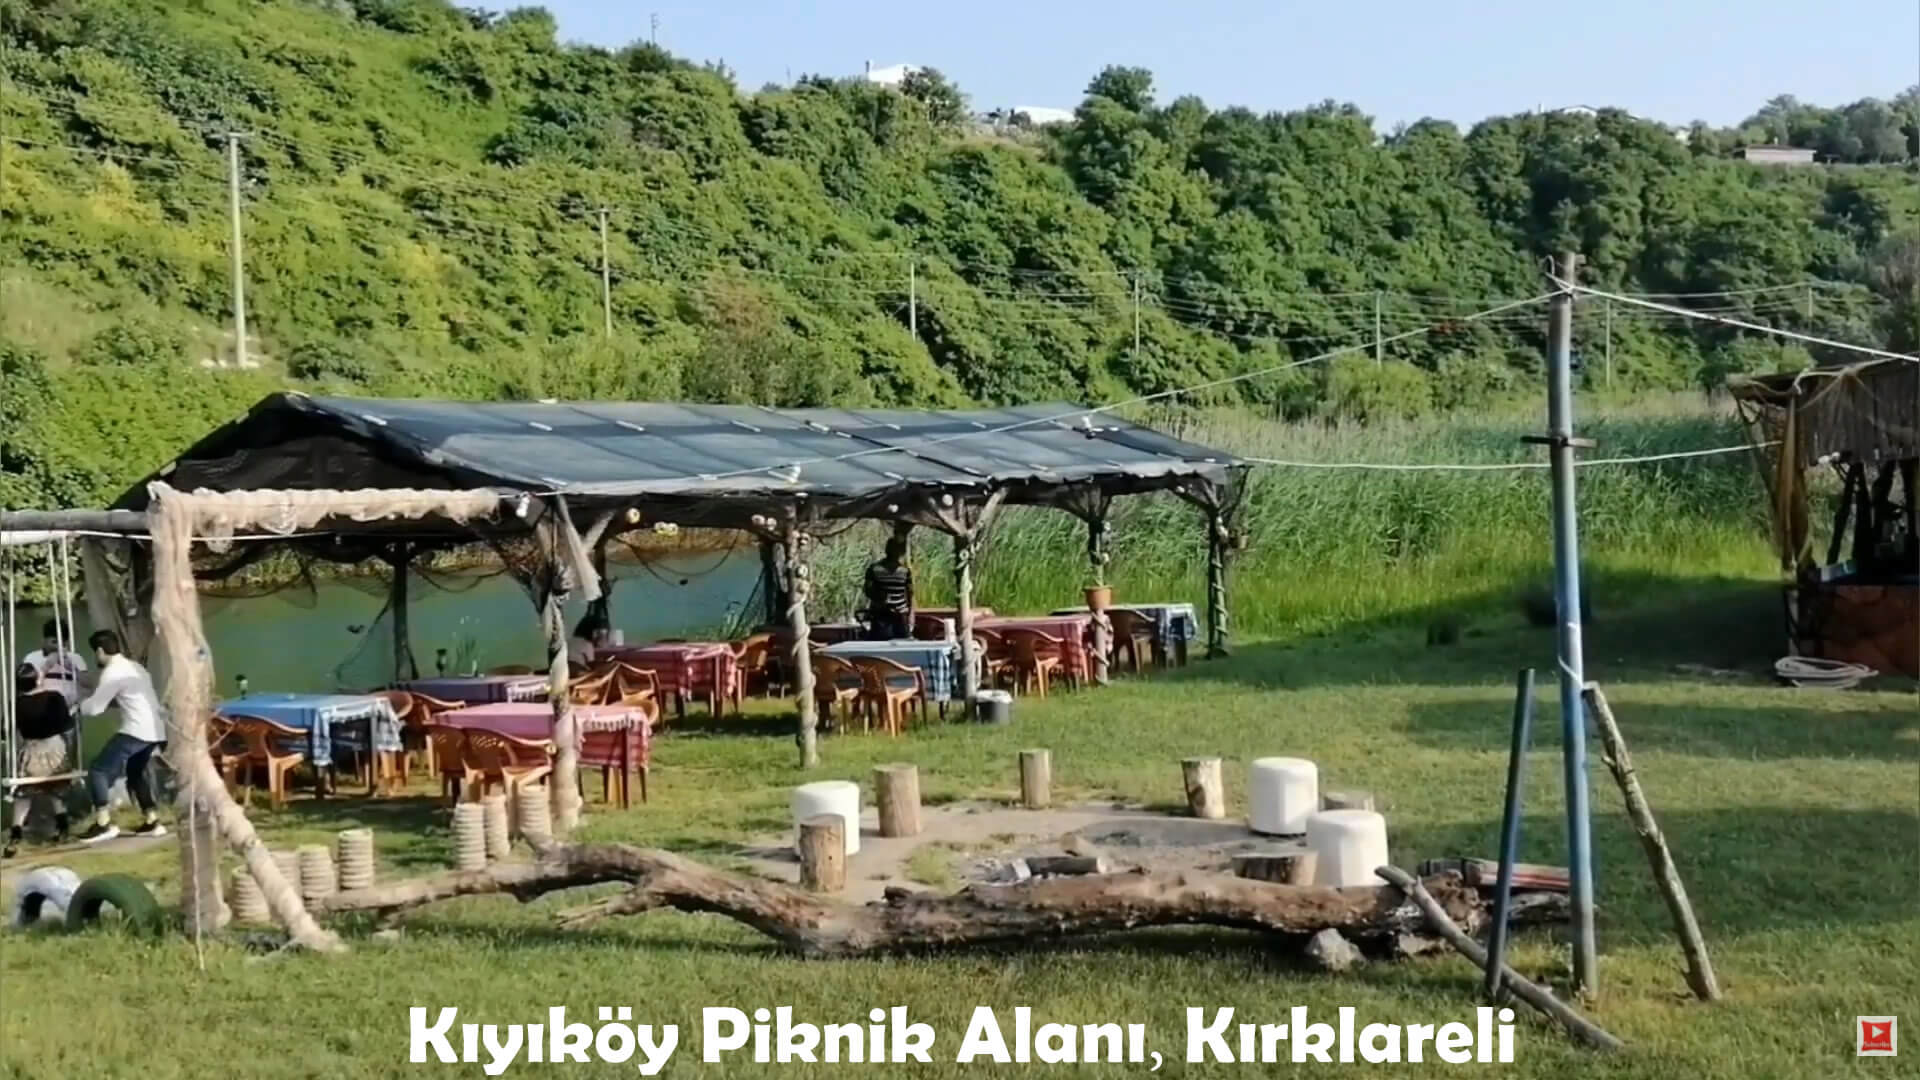 Kiyikoy Picnic Area, Kirklareli